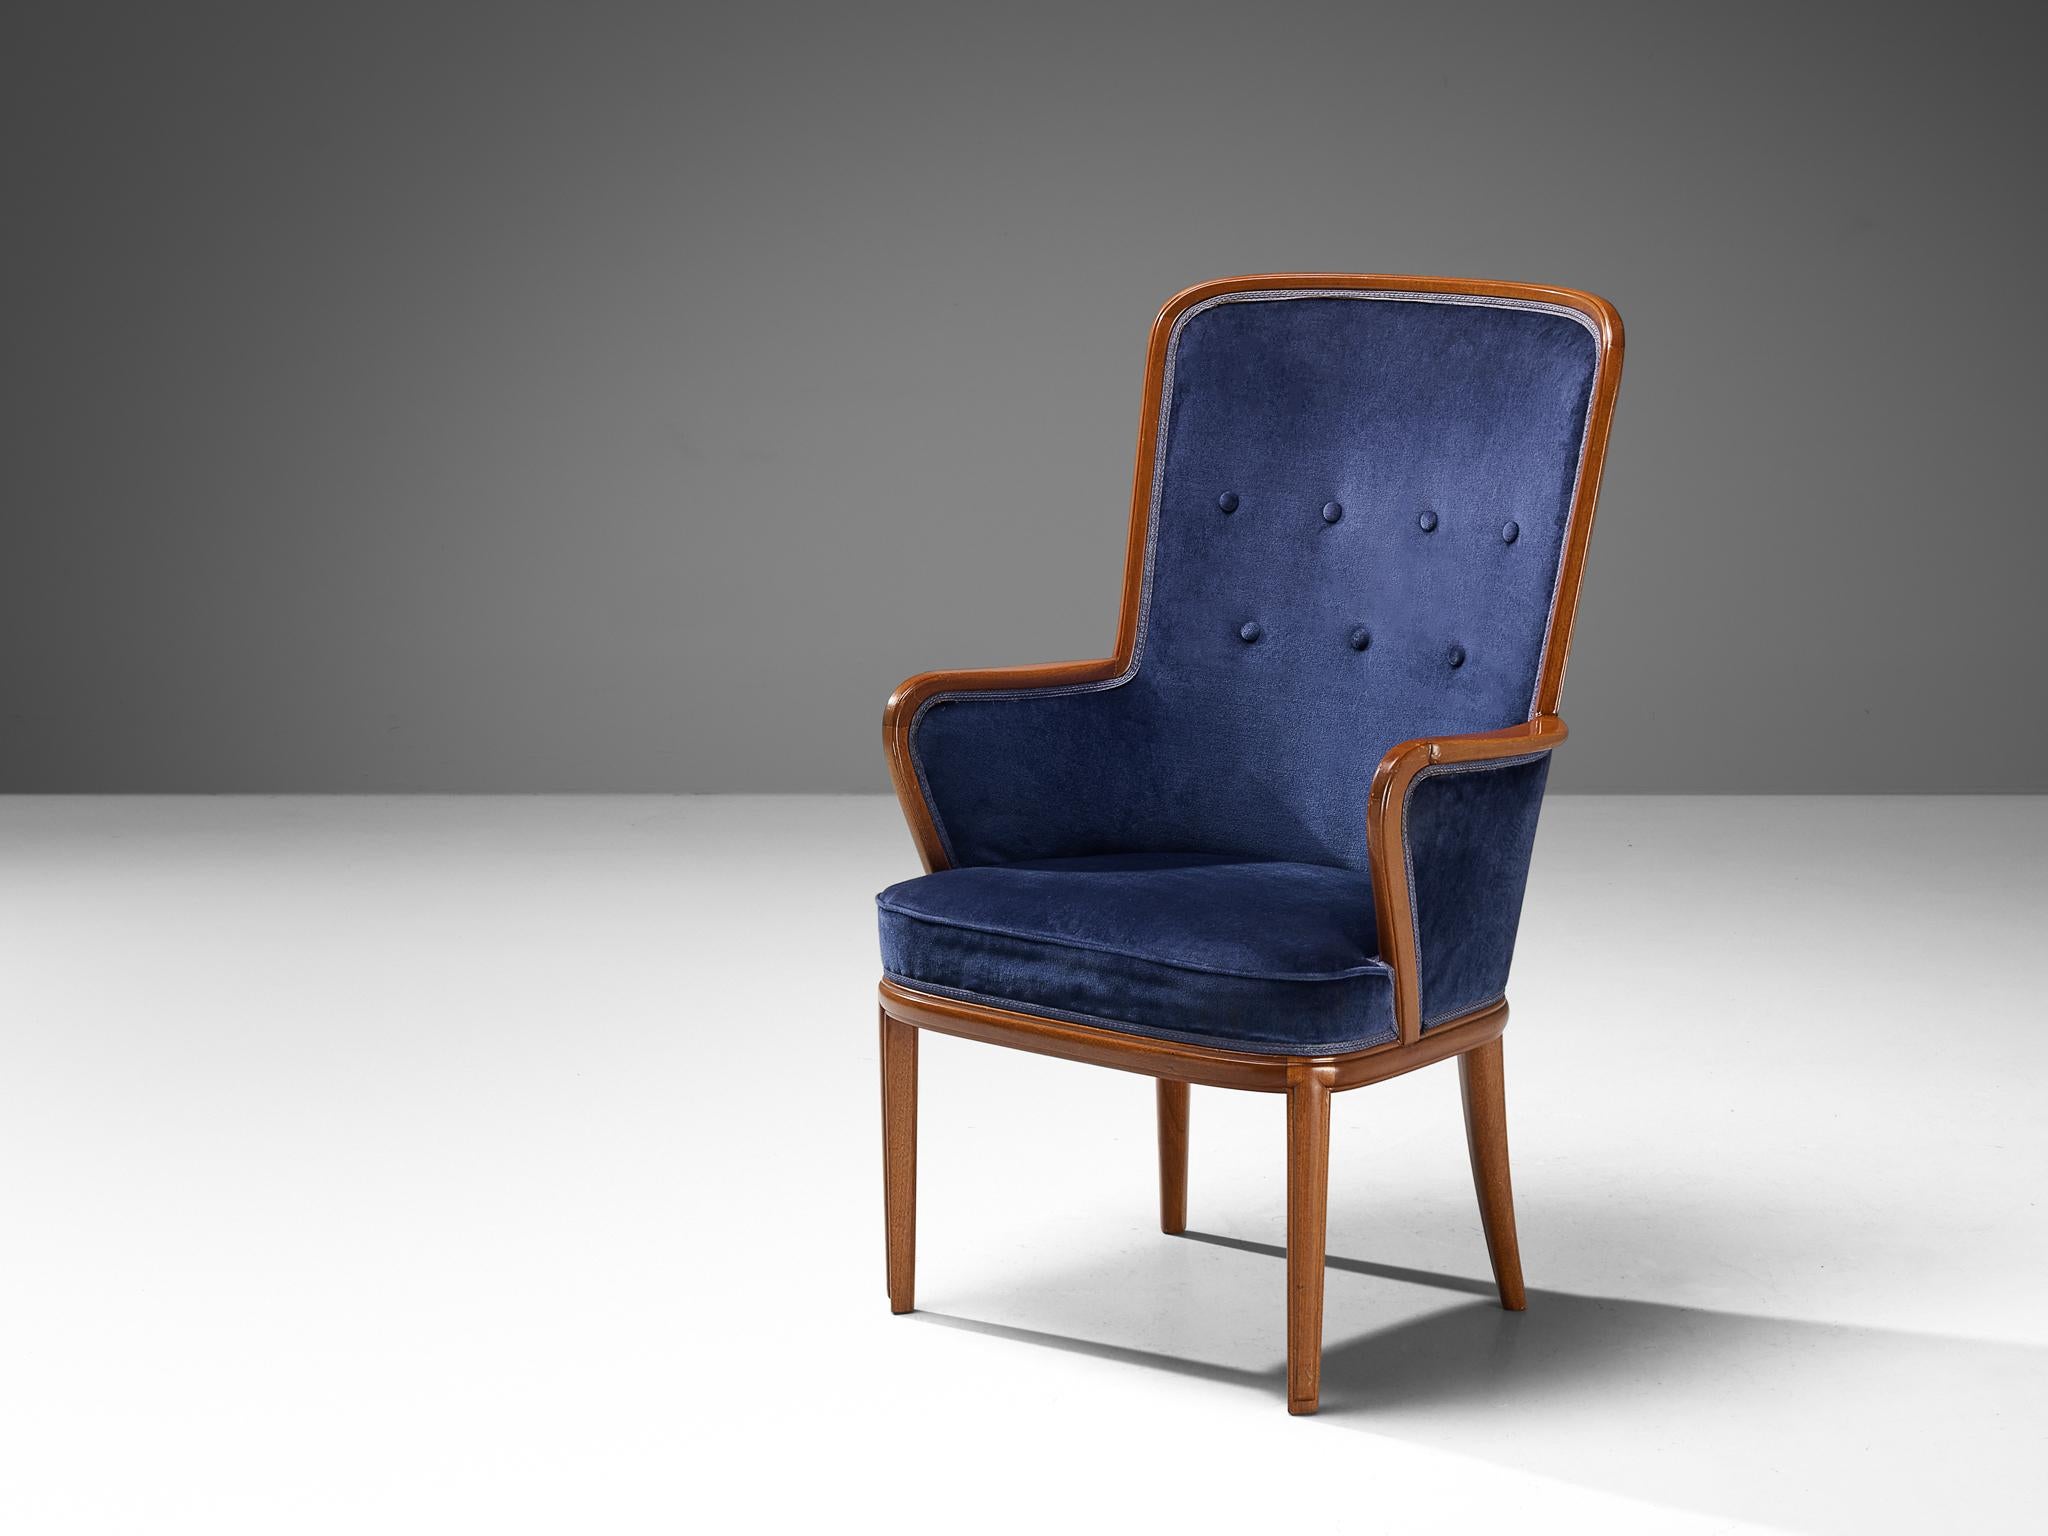 Carl Malmsten, chaise à haut dossier, acajou, laiton, cuir, Suède, années 1940

Chaise à haut dossier conçue par le designer suédois Carl Malmsten. Cette chaise est fabriquée dans un acajou chaud, avec une belle veinure visible, comme on peut le